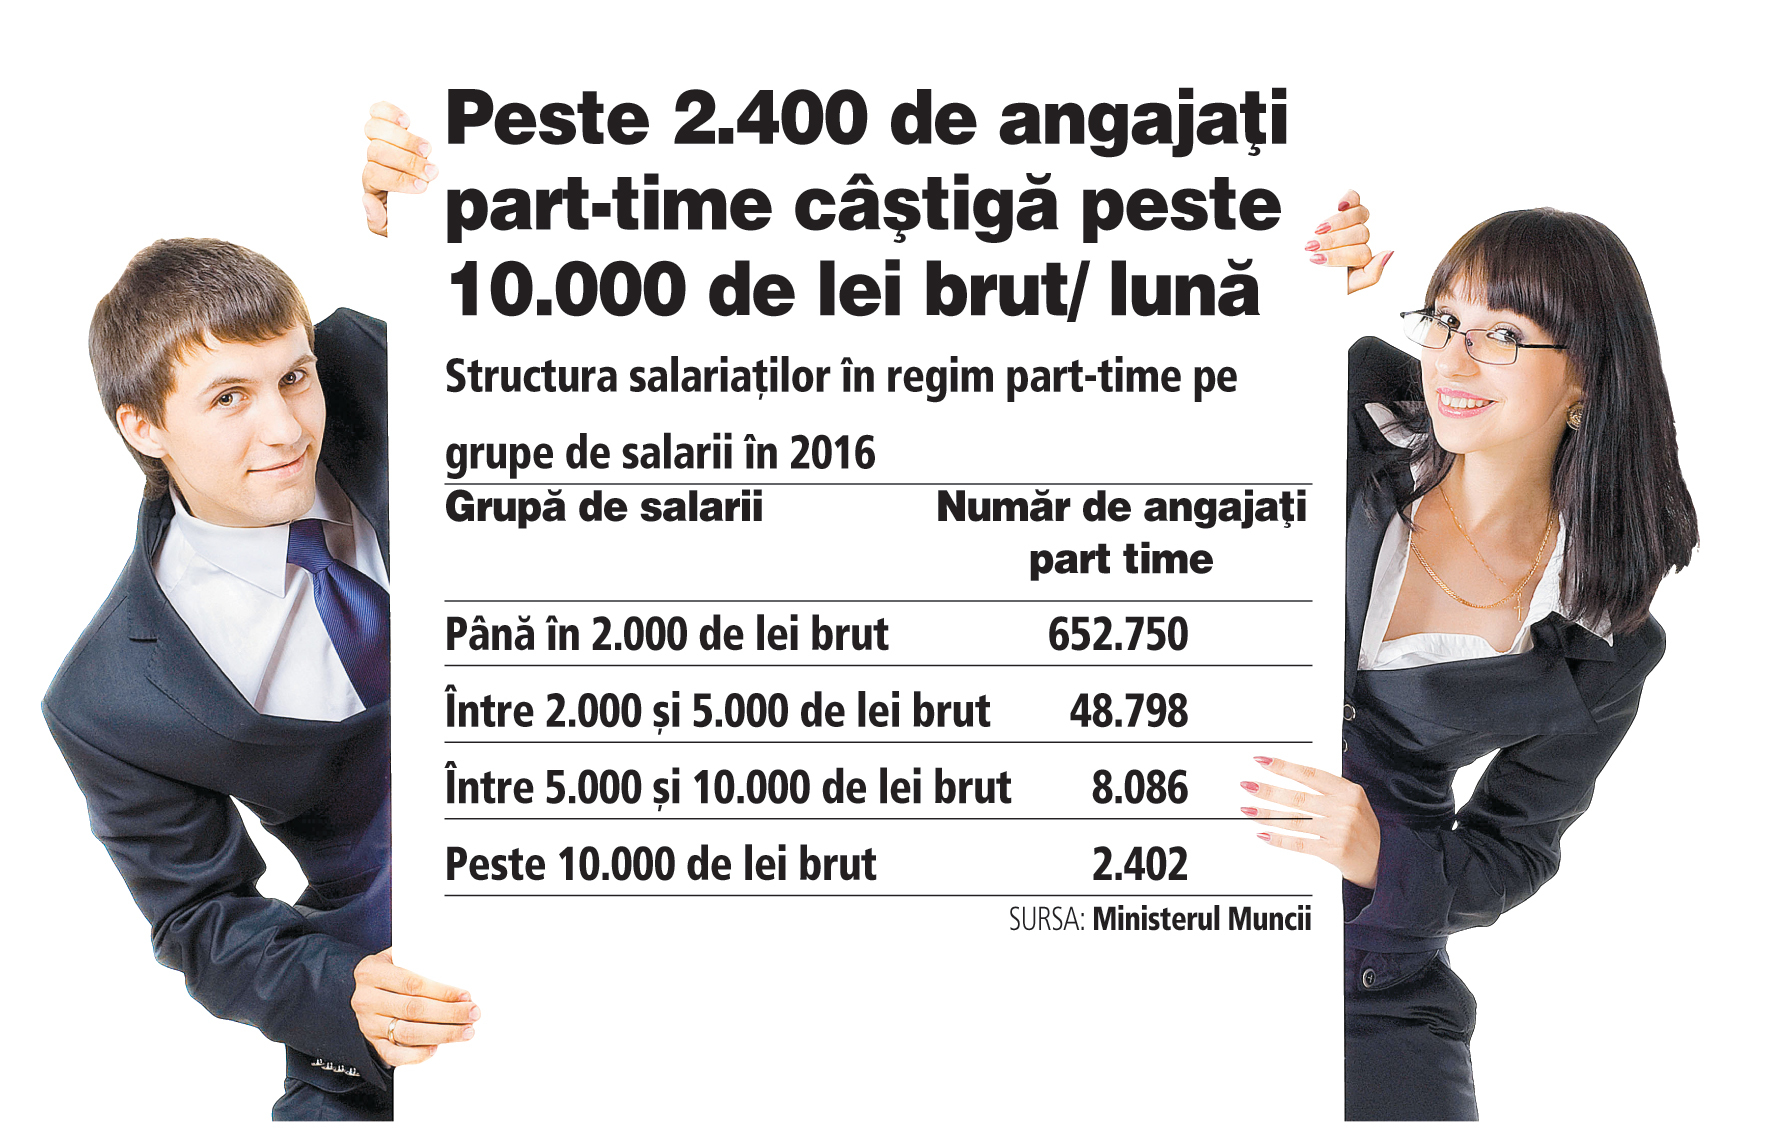 Peste 700.000 de români sunt angajaţi part-time, iar 90% din aceştia câştigă sub 2.000 de lei brut pe lună. O parte din contractele cu normă parţială cu salarii apropiate de nivelul minim ascund o politică de salarizare la gri, pentru ca angajatorii să-şi reducă din costuri